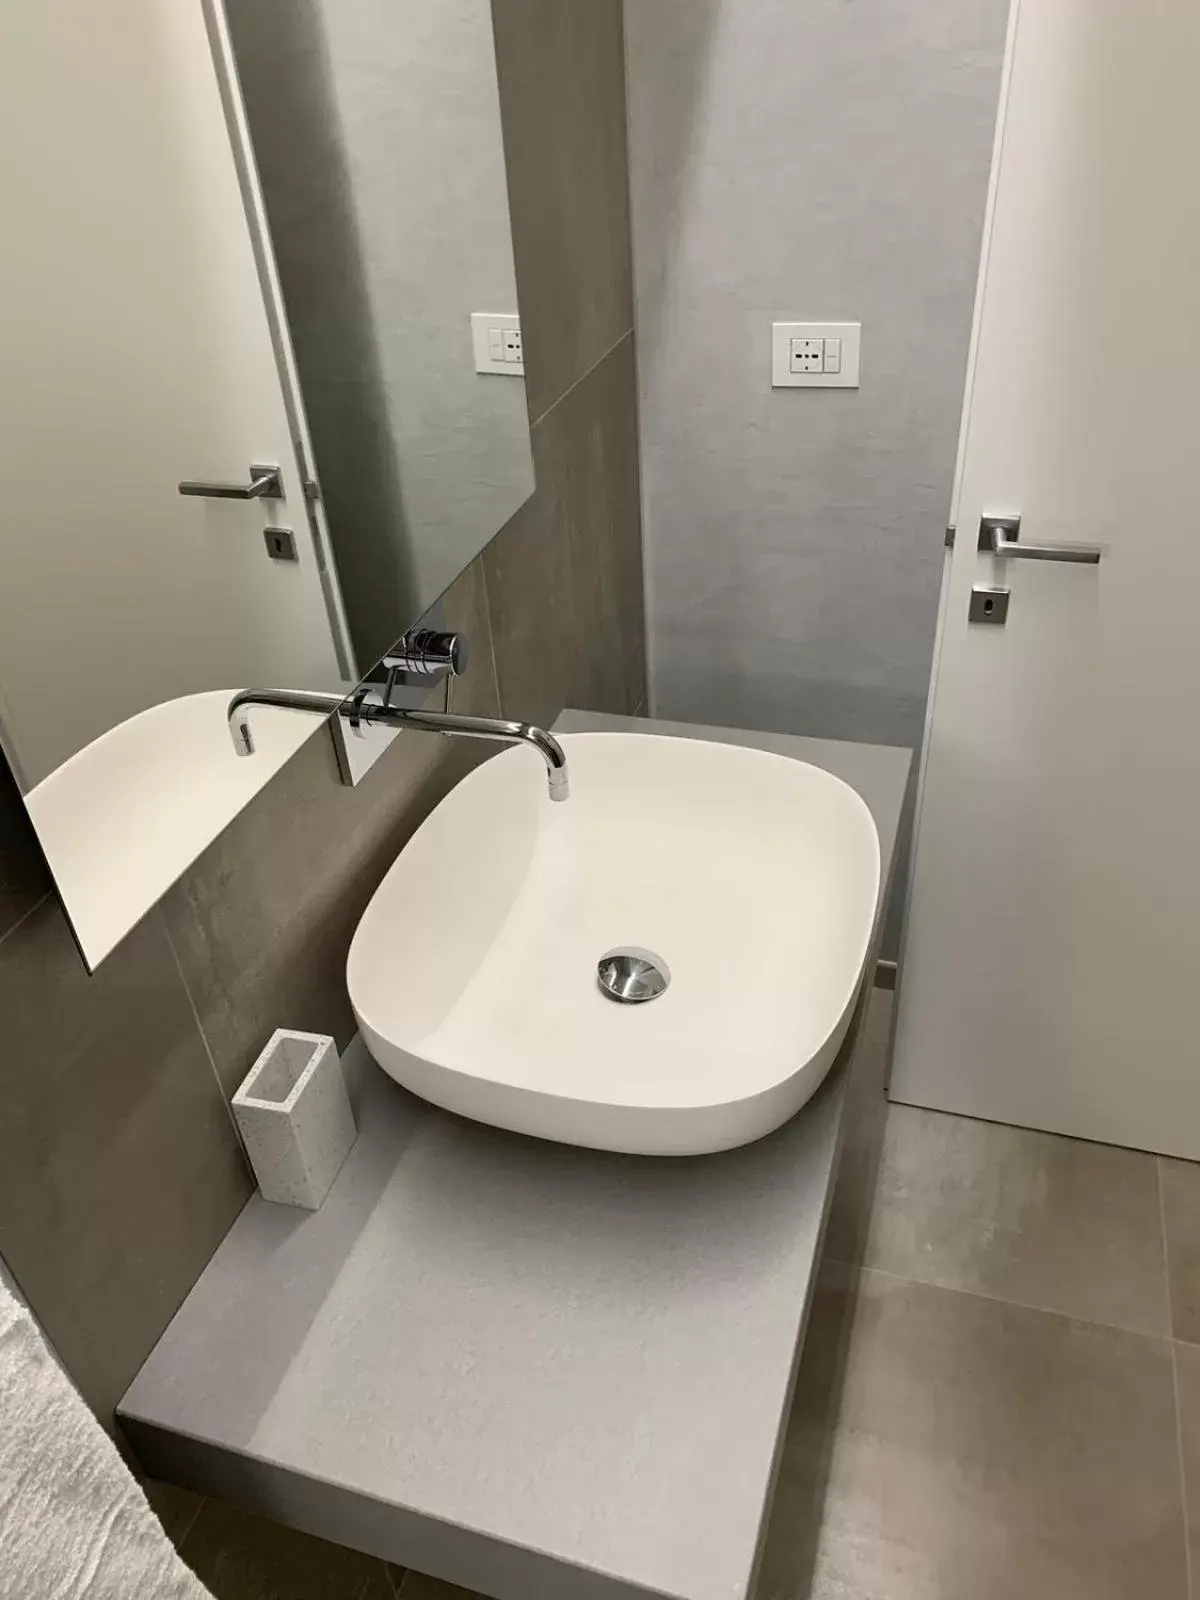 Bathroom in B&B Galleria Cavour